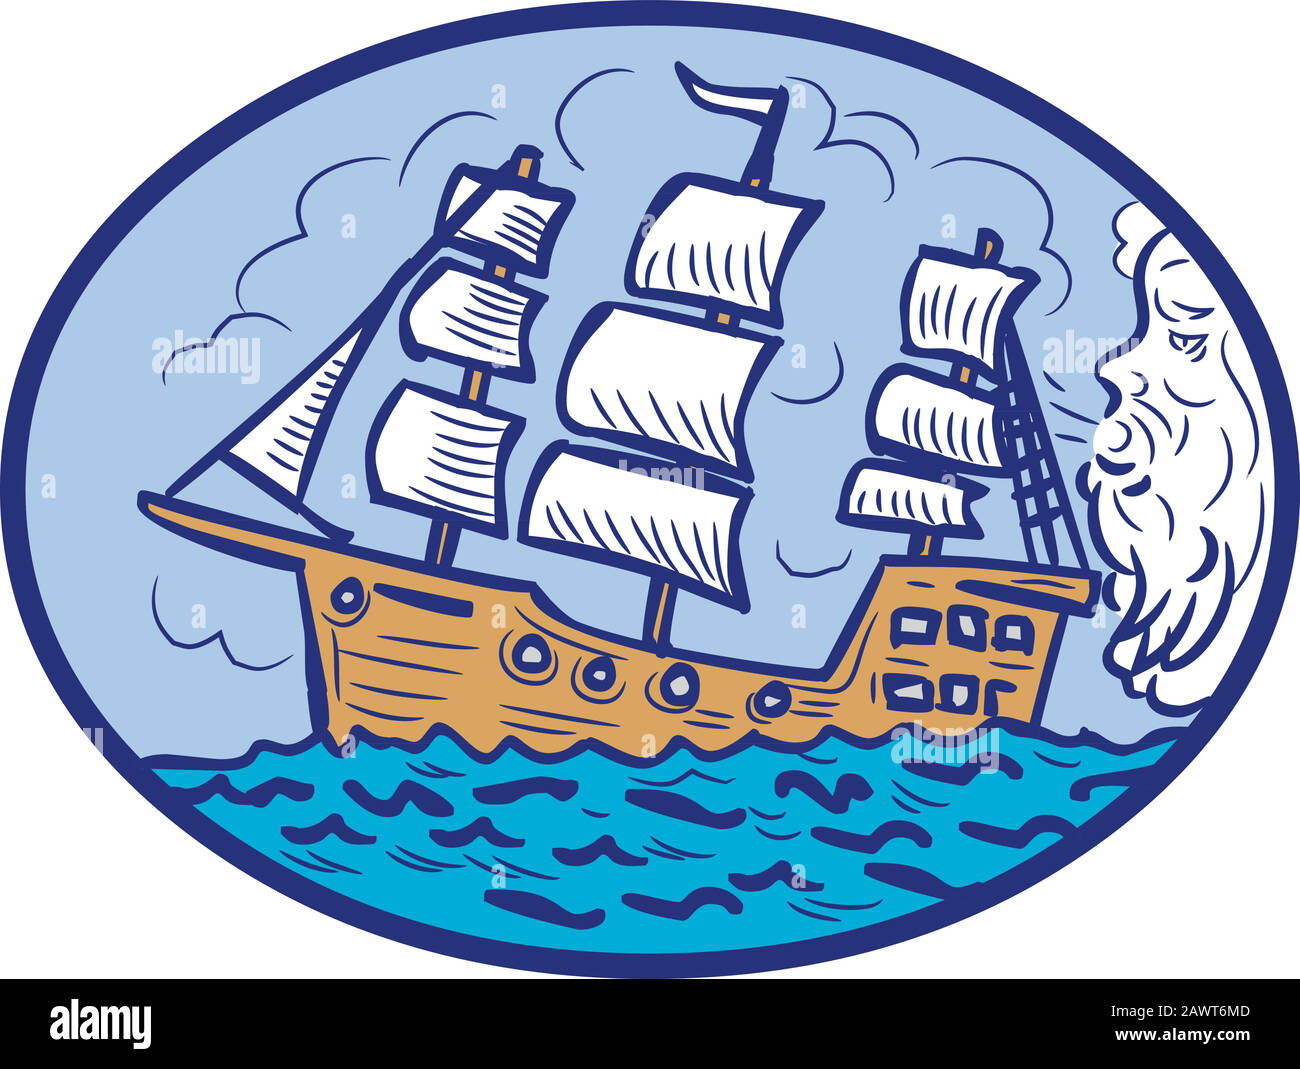 Zeichnung Skizze Stil Illustration von Boreas, dem griechischen gott des Nordwindes und der Bräter des Winters, wehend eine Galeone, hohes Segelschiff in ovaler Form Stock Vektor